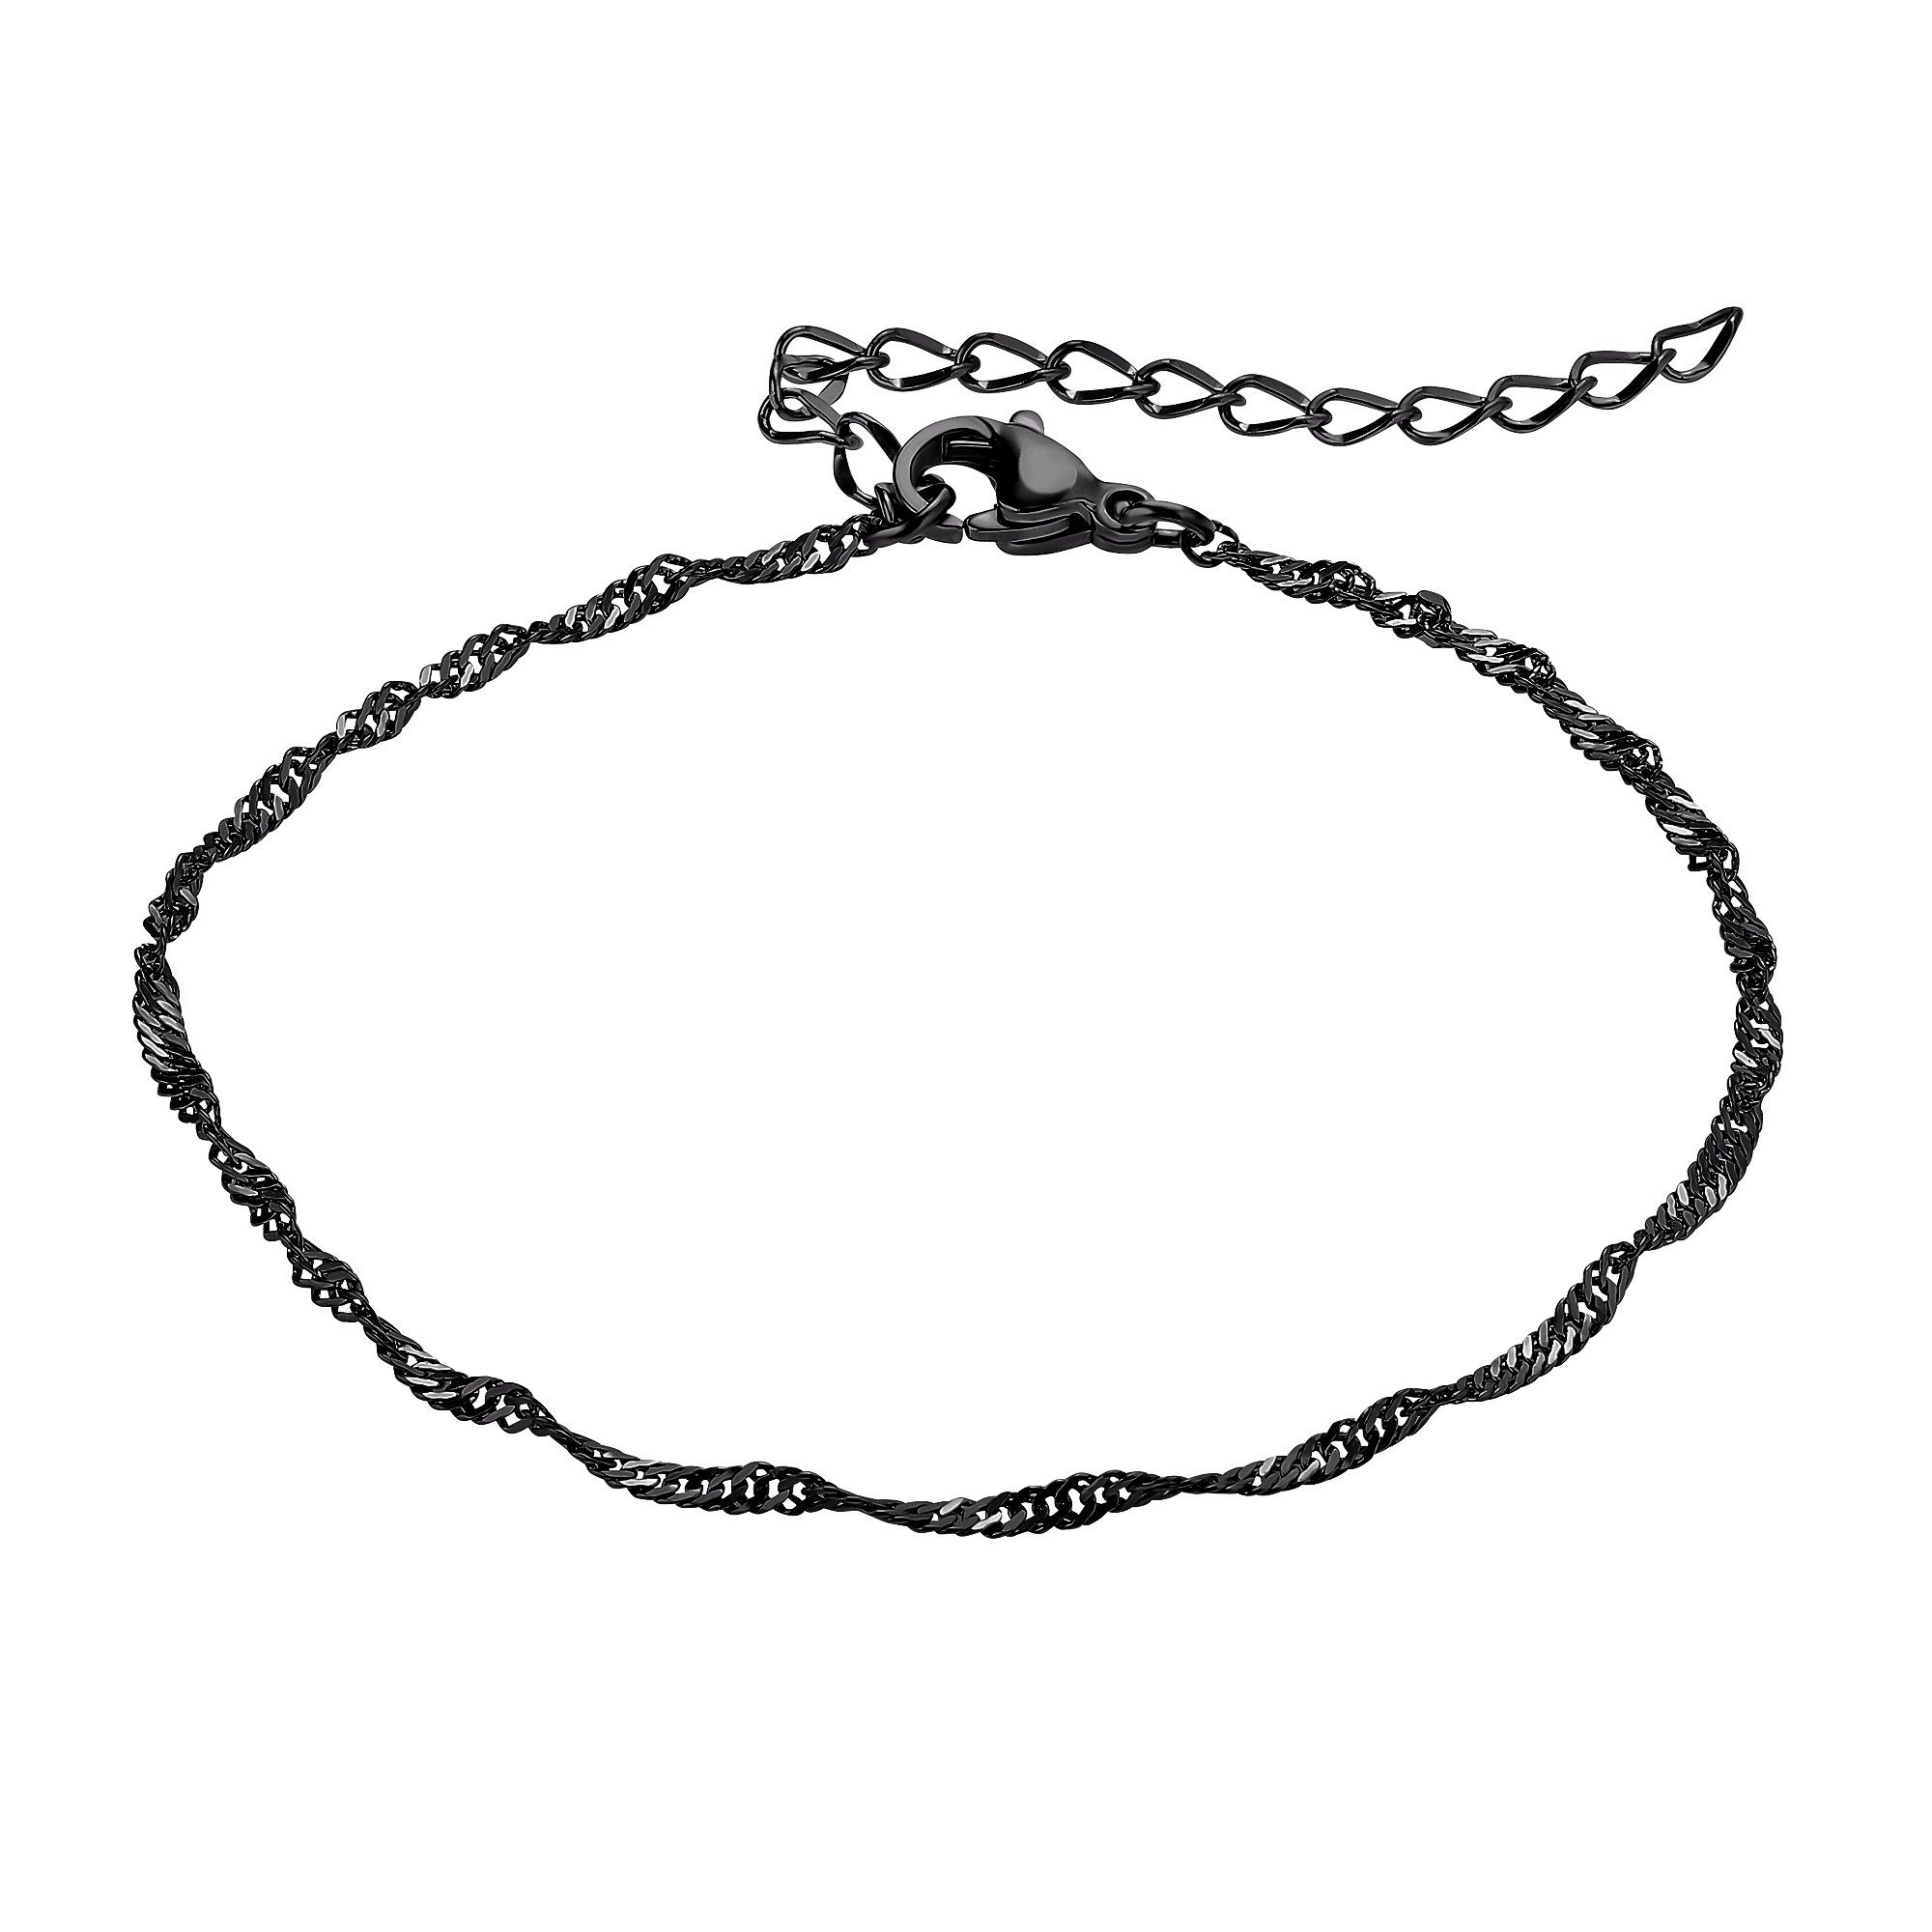 Heideman Armband Meikel schwarz farben (Armband, inkl. Geschenkverpackung), Armkette für Männer